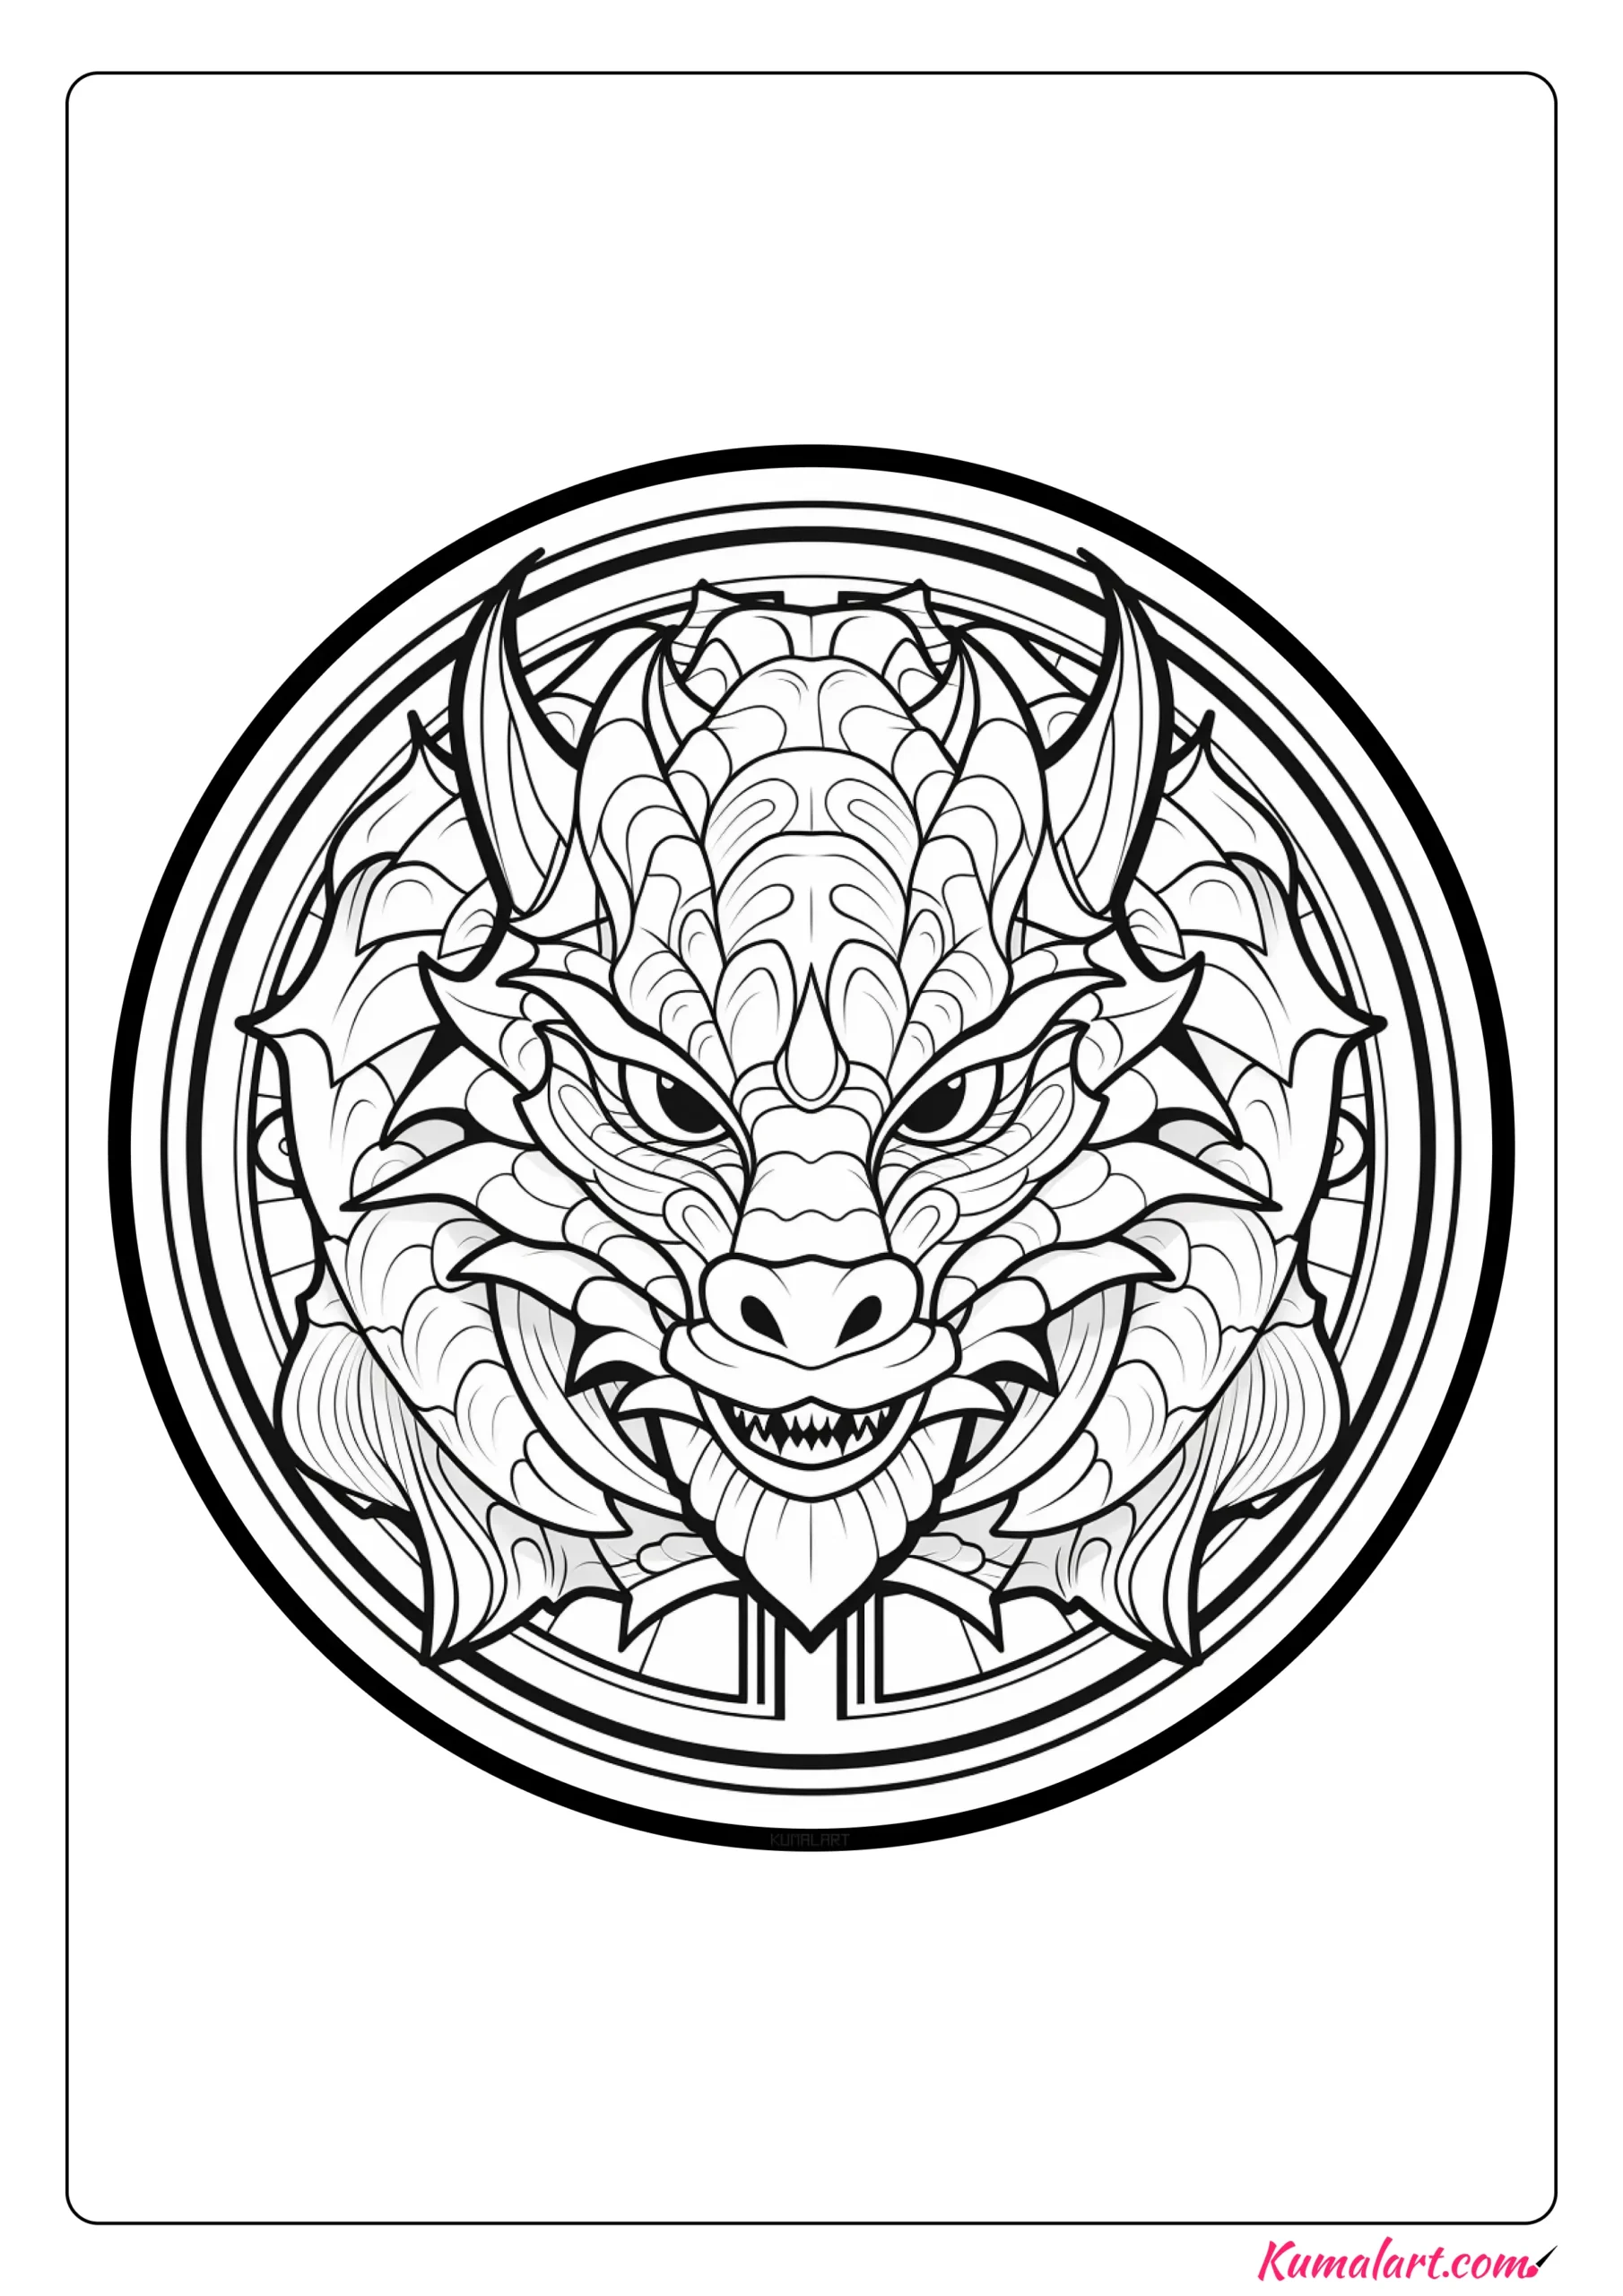 Thomas the Dragon Mandala Coloring Page